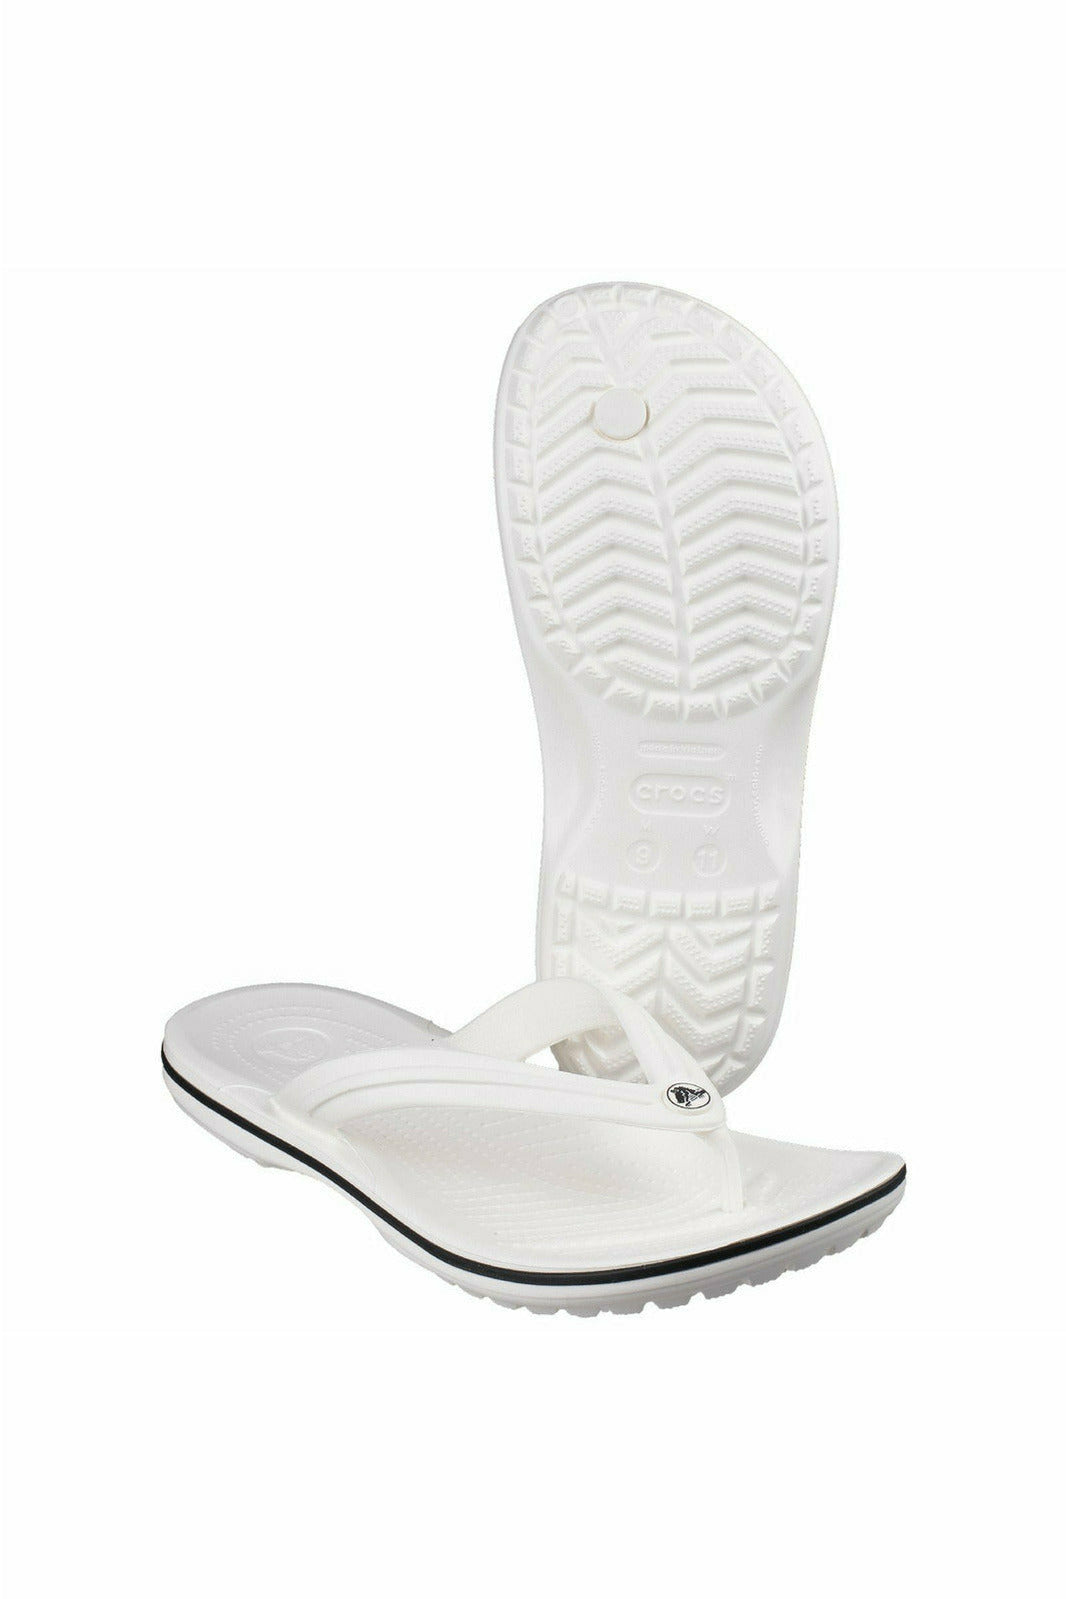 Crocs - Crocband Flip White 11033 Unisex